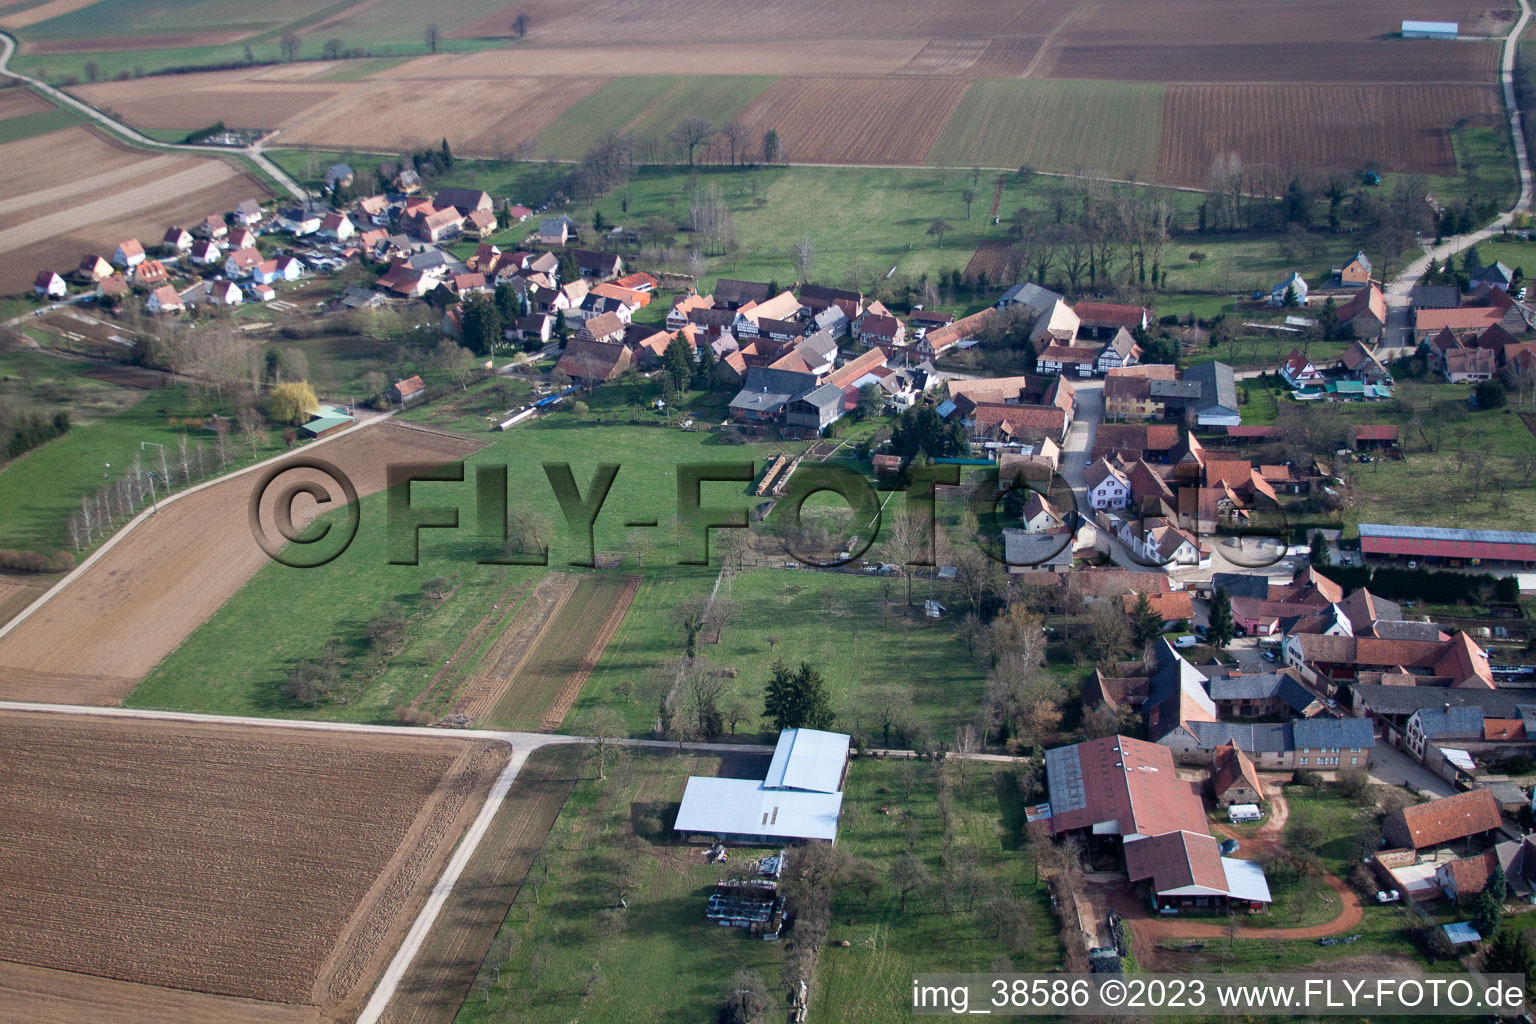 Geiswiller im Bundesland Bas-Rhin, Frankreich aus der Luft betrachtet